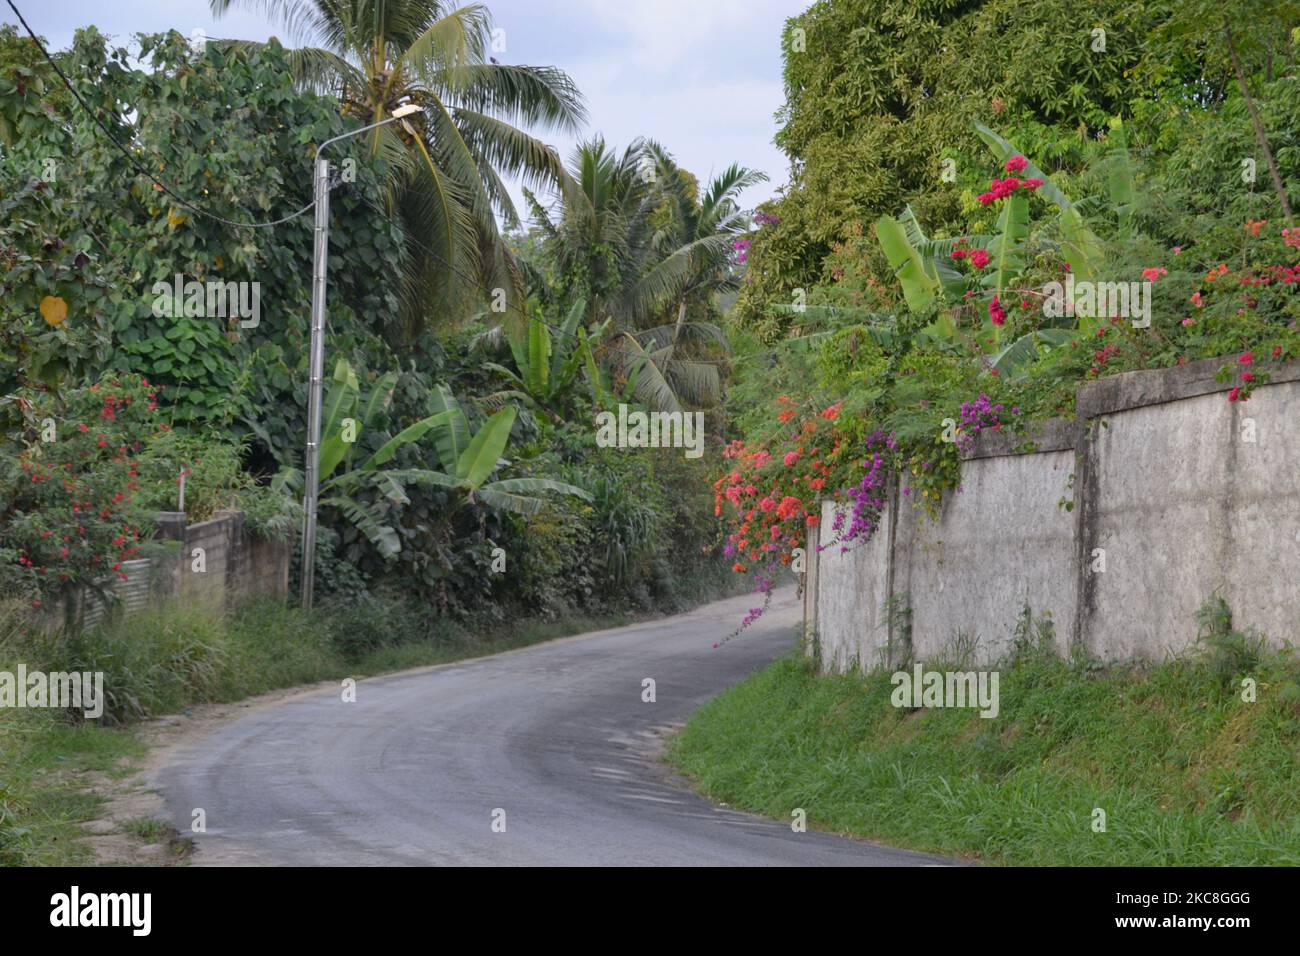 Luxuriante route verte de l'île pleine de palmiers tropicaux, bougainvilliers et autres plantes vertes sur un virage dans une route étroite sur l'île d'Efate près de Port Vila Banque D'Images